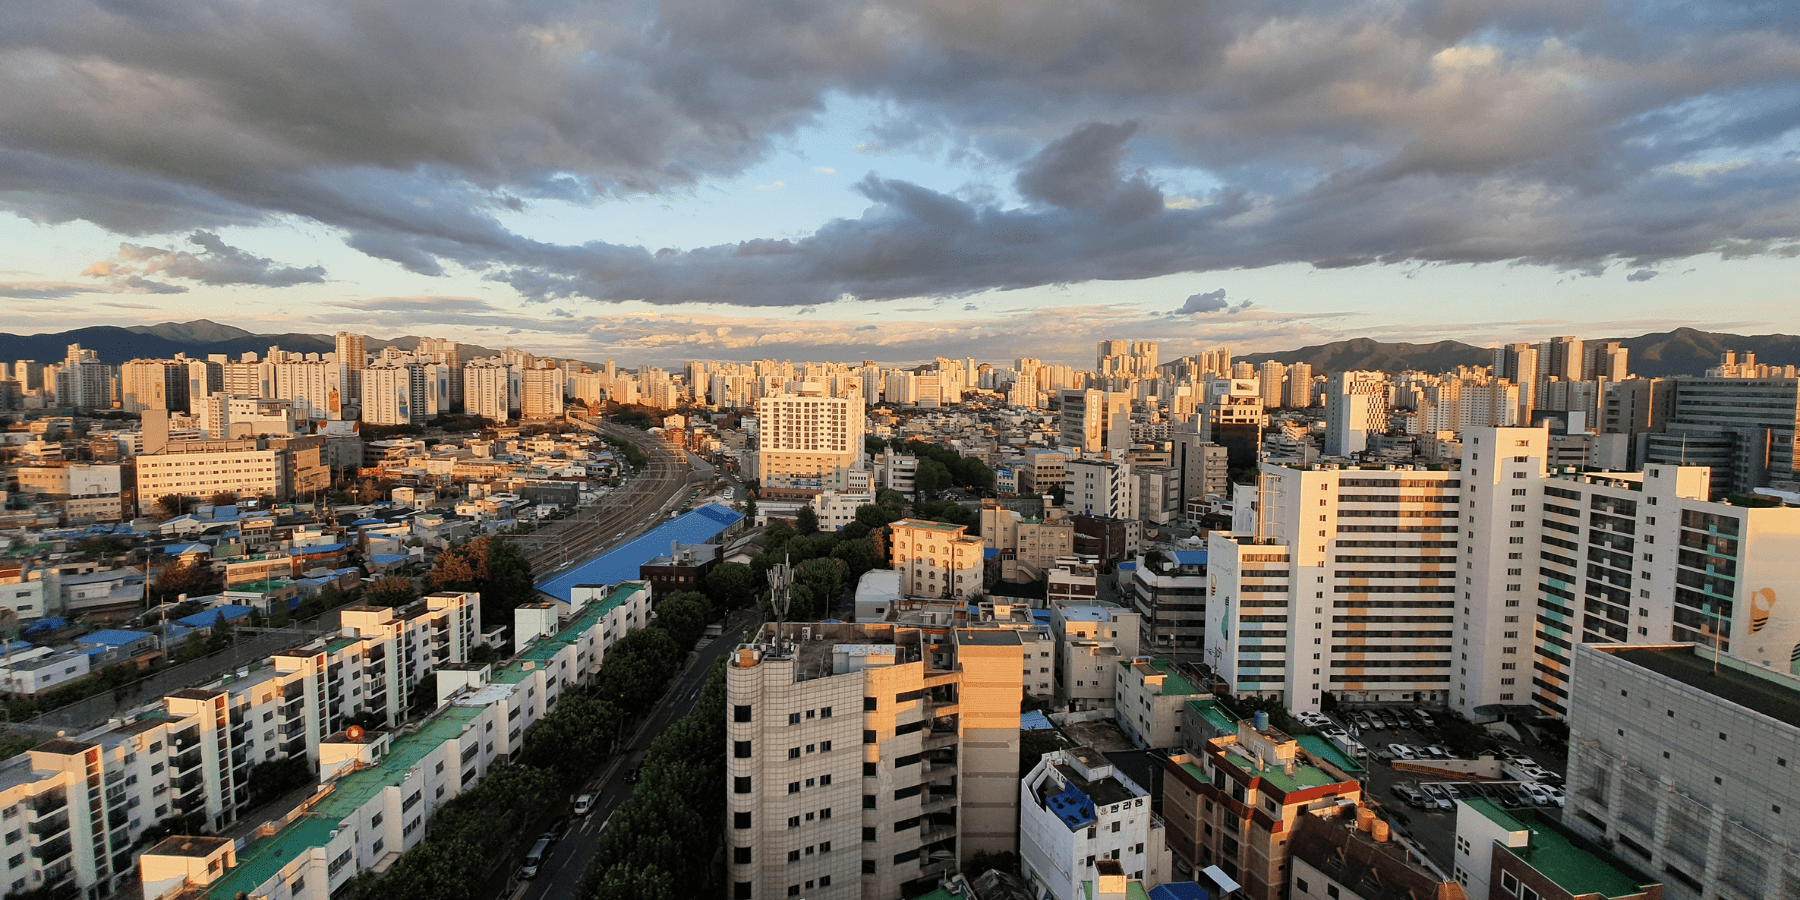 Na dachach miasta powstaje największa farma fotowoltaiczna w Korei. Zasili milion domów